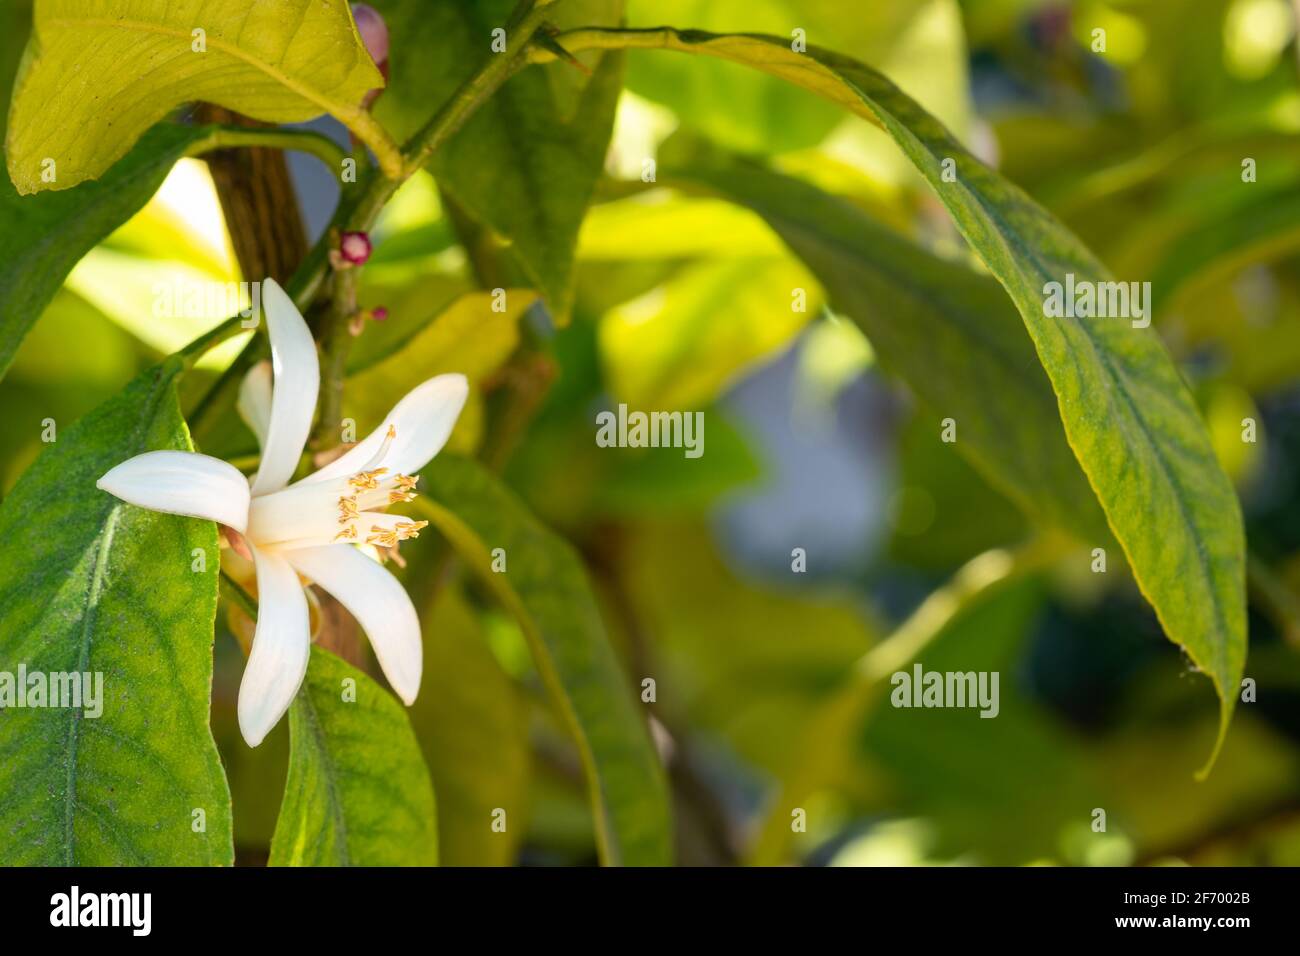 Profumati fiori d'arancio immagini e fotografie stock ad alta risoluzione -  Alamy